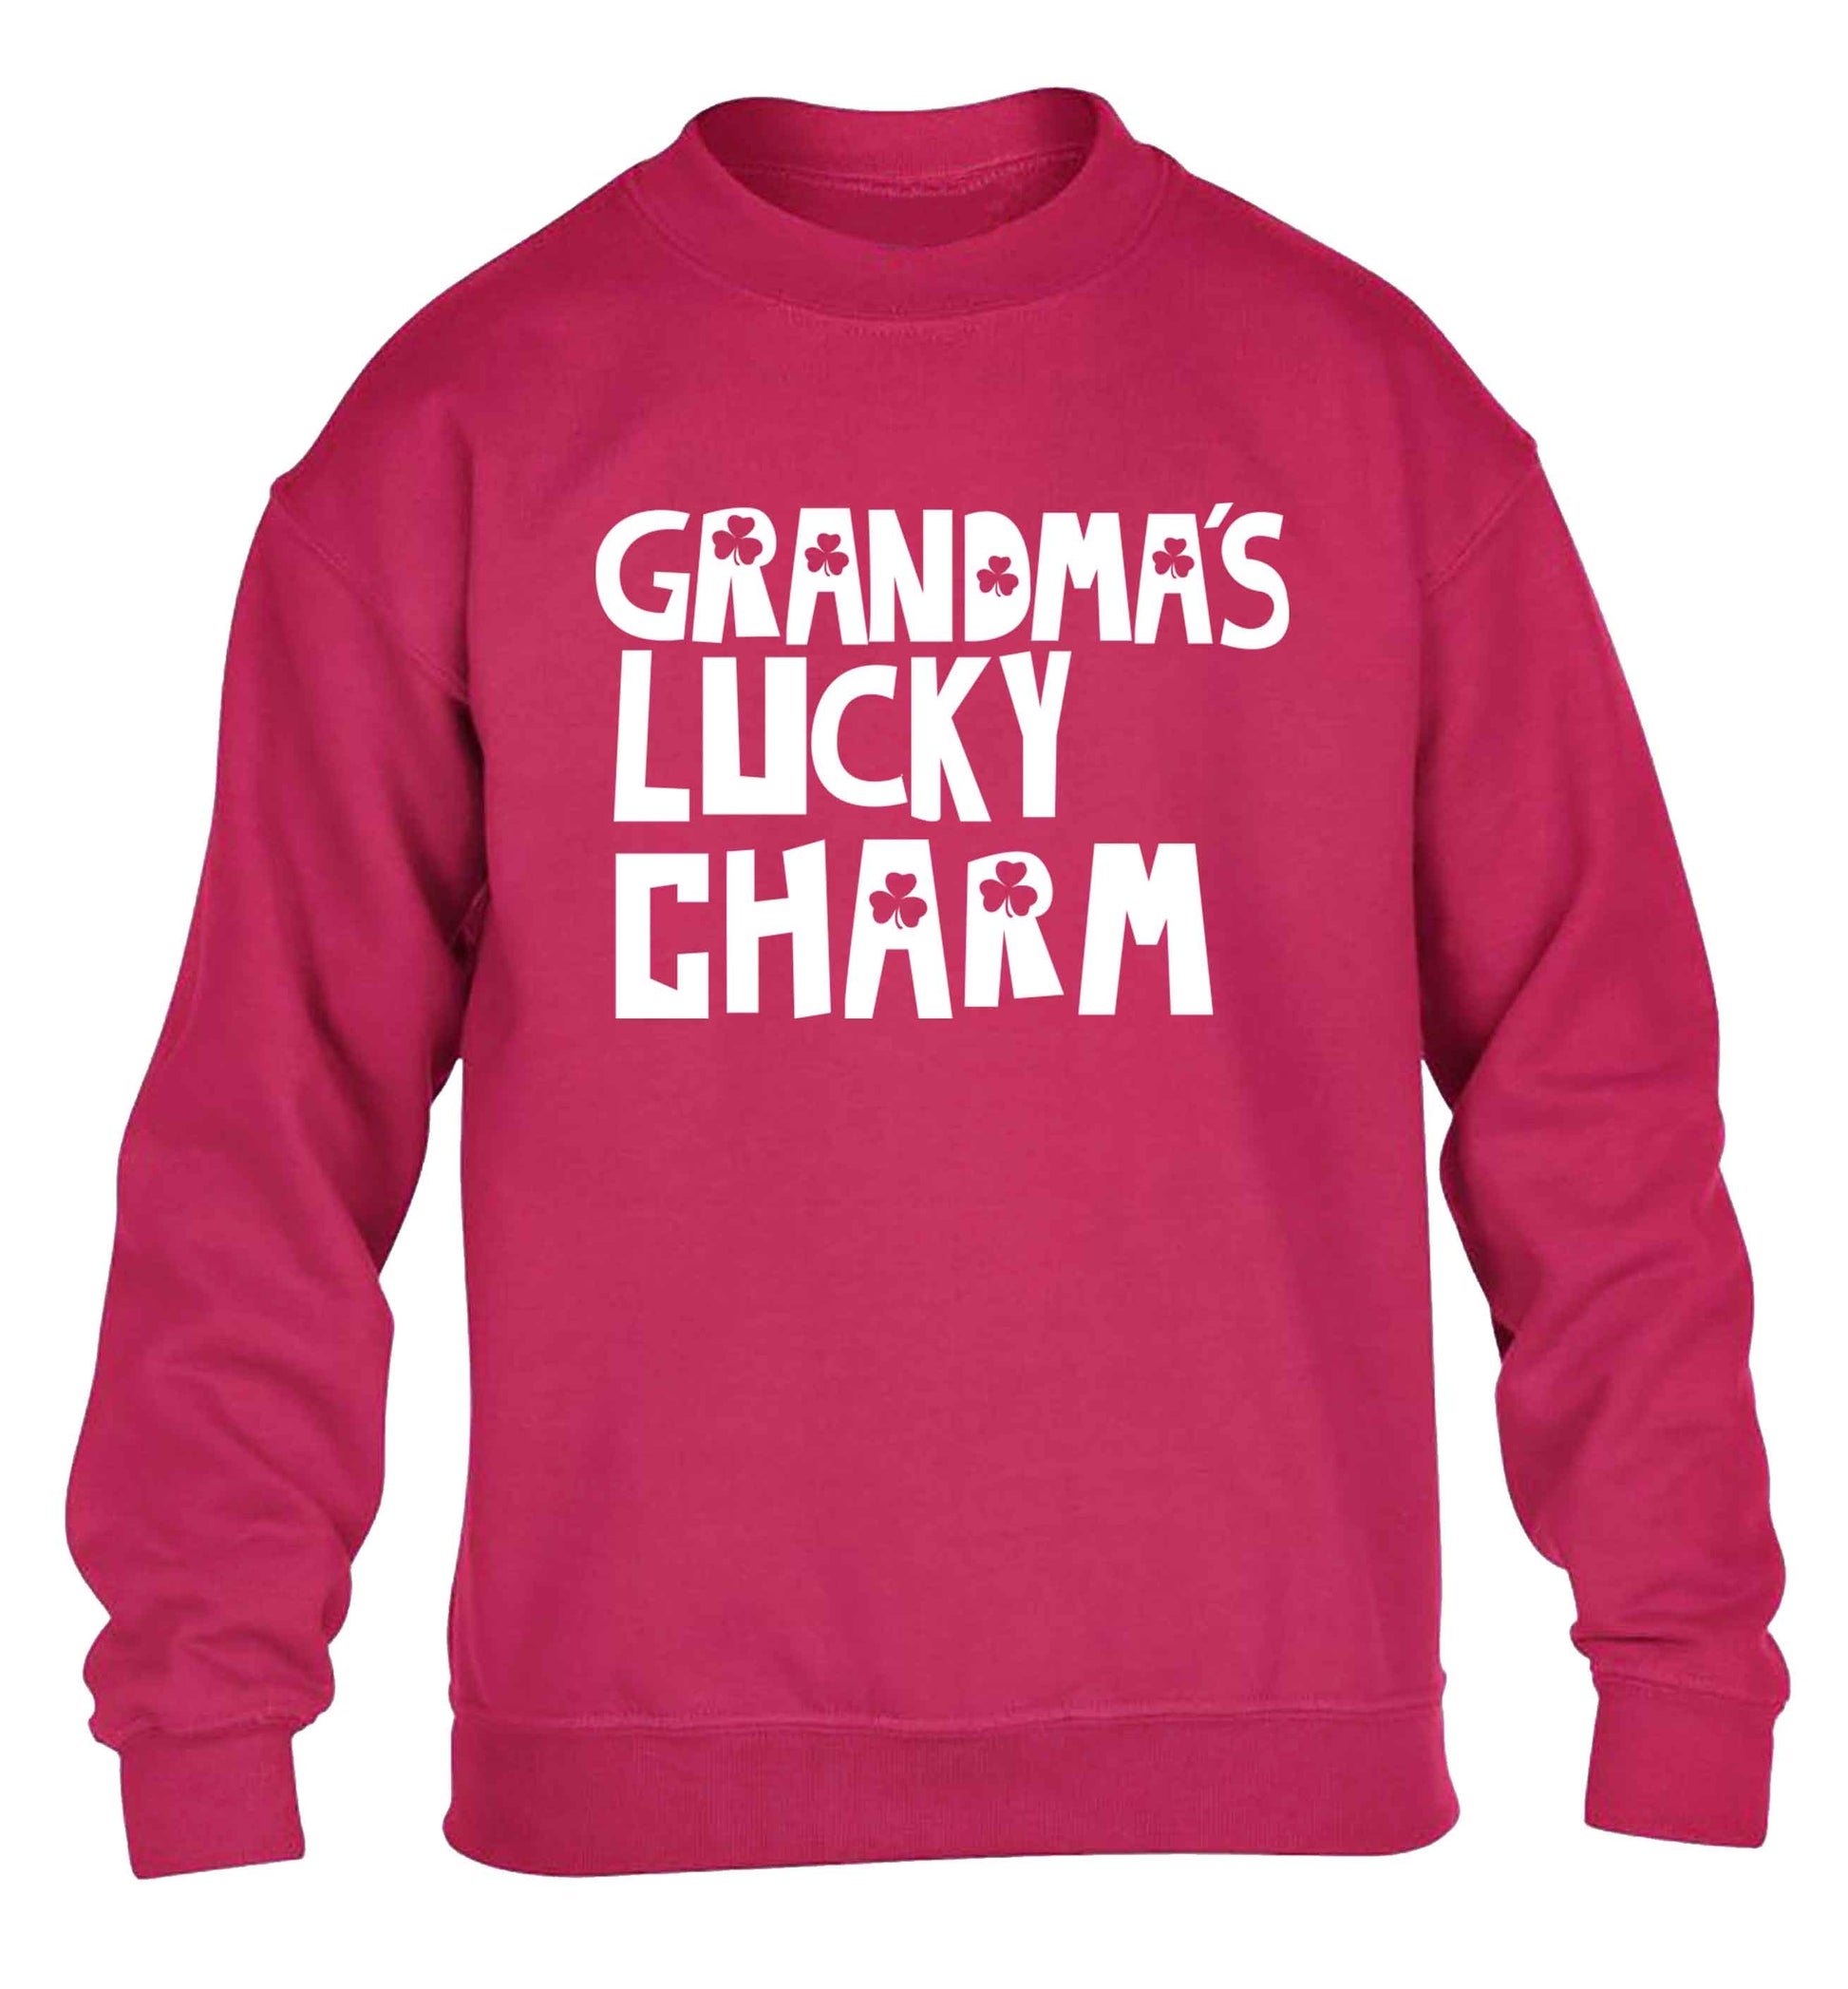 Grandma's lucky charm children's pink sweater 12-13 Years